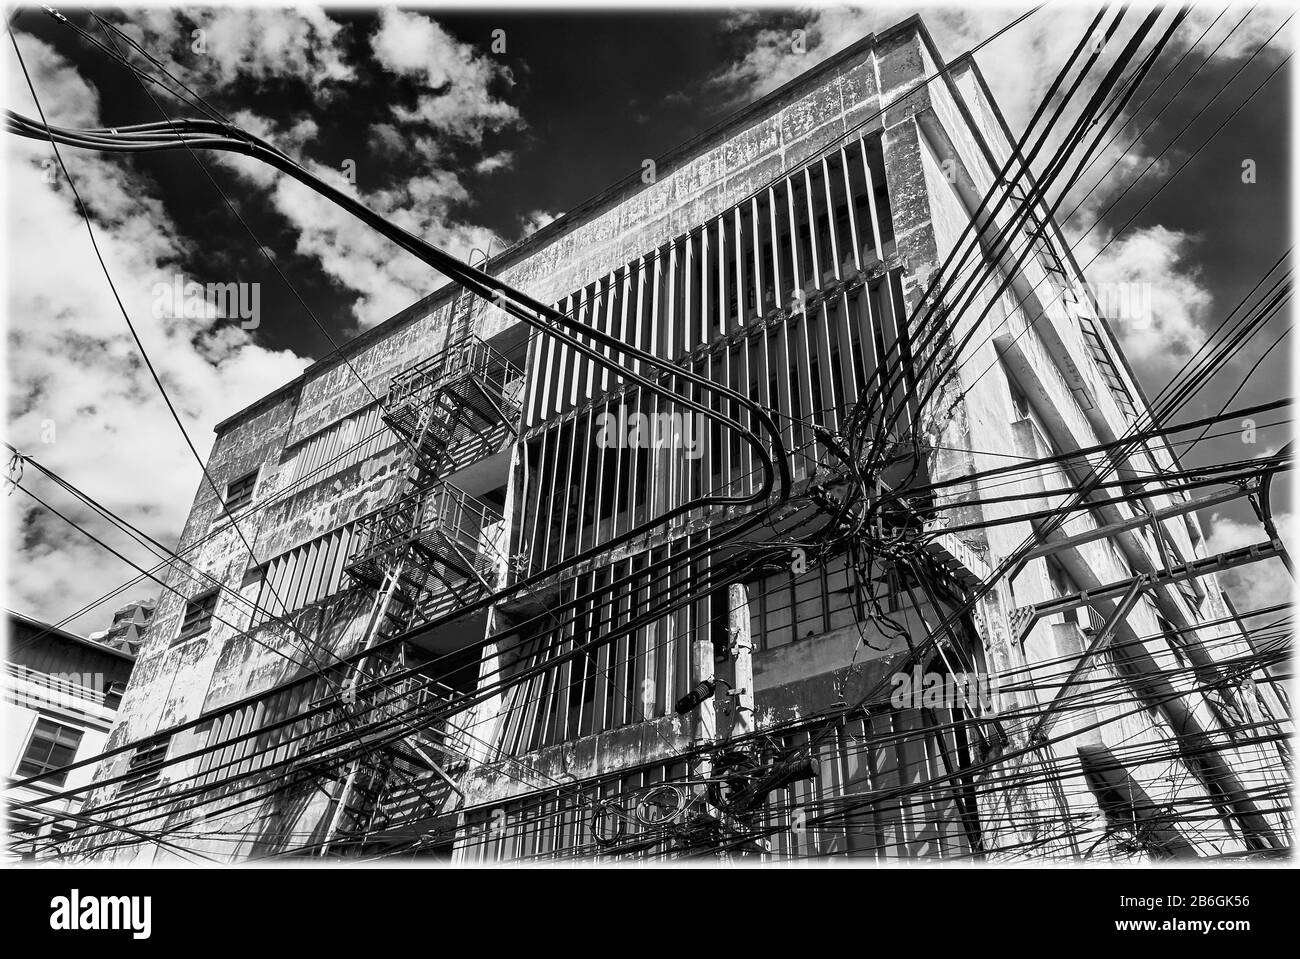 Vista en blanco y negro de un antiguo edificio comercial y un lío de cables, líneas eléctricas en el distrito chino de Binondo, Manila, Filipinas Foto de stock